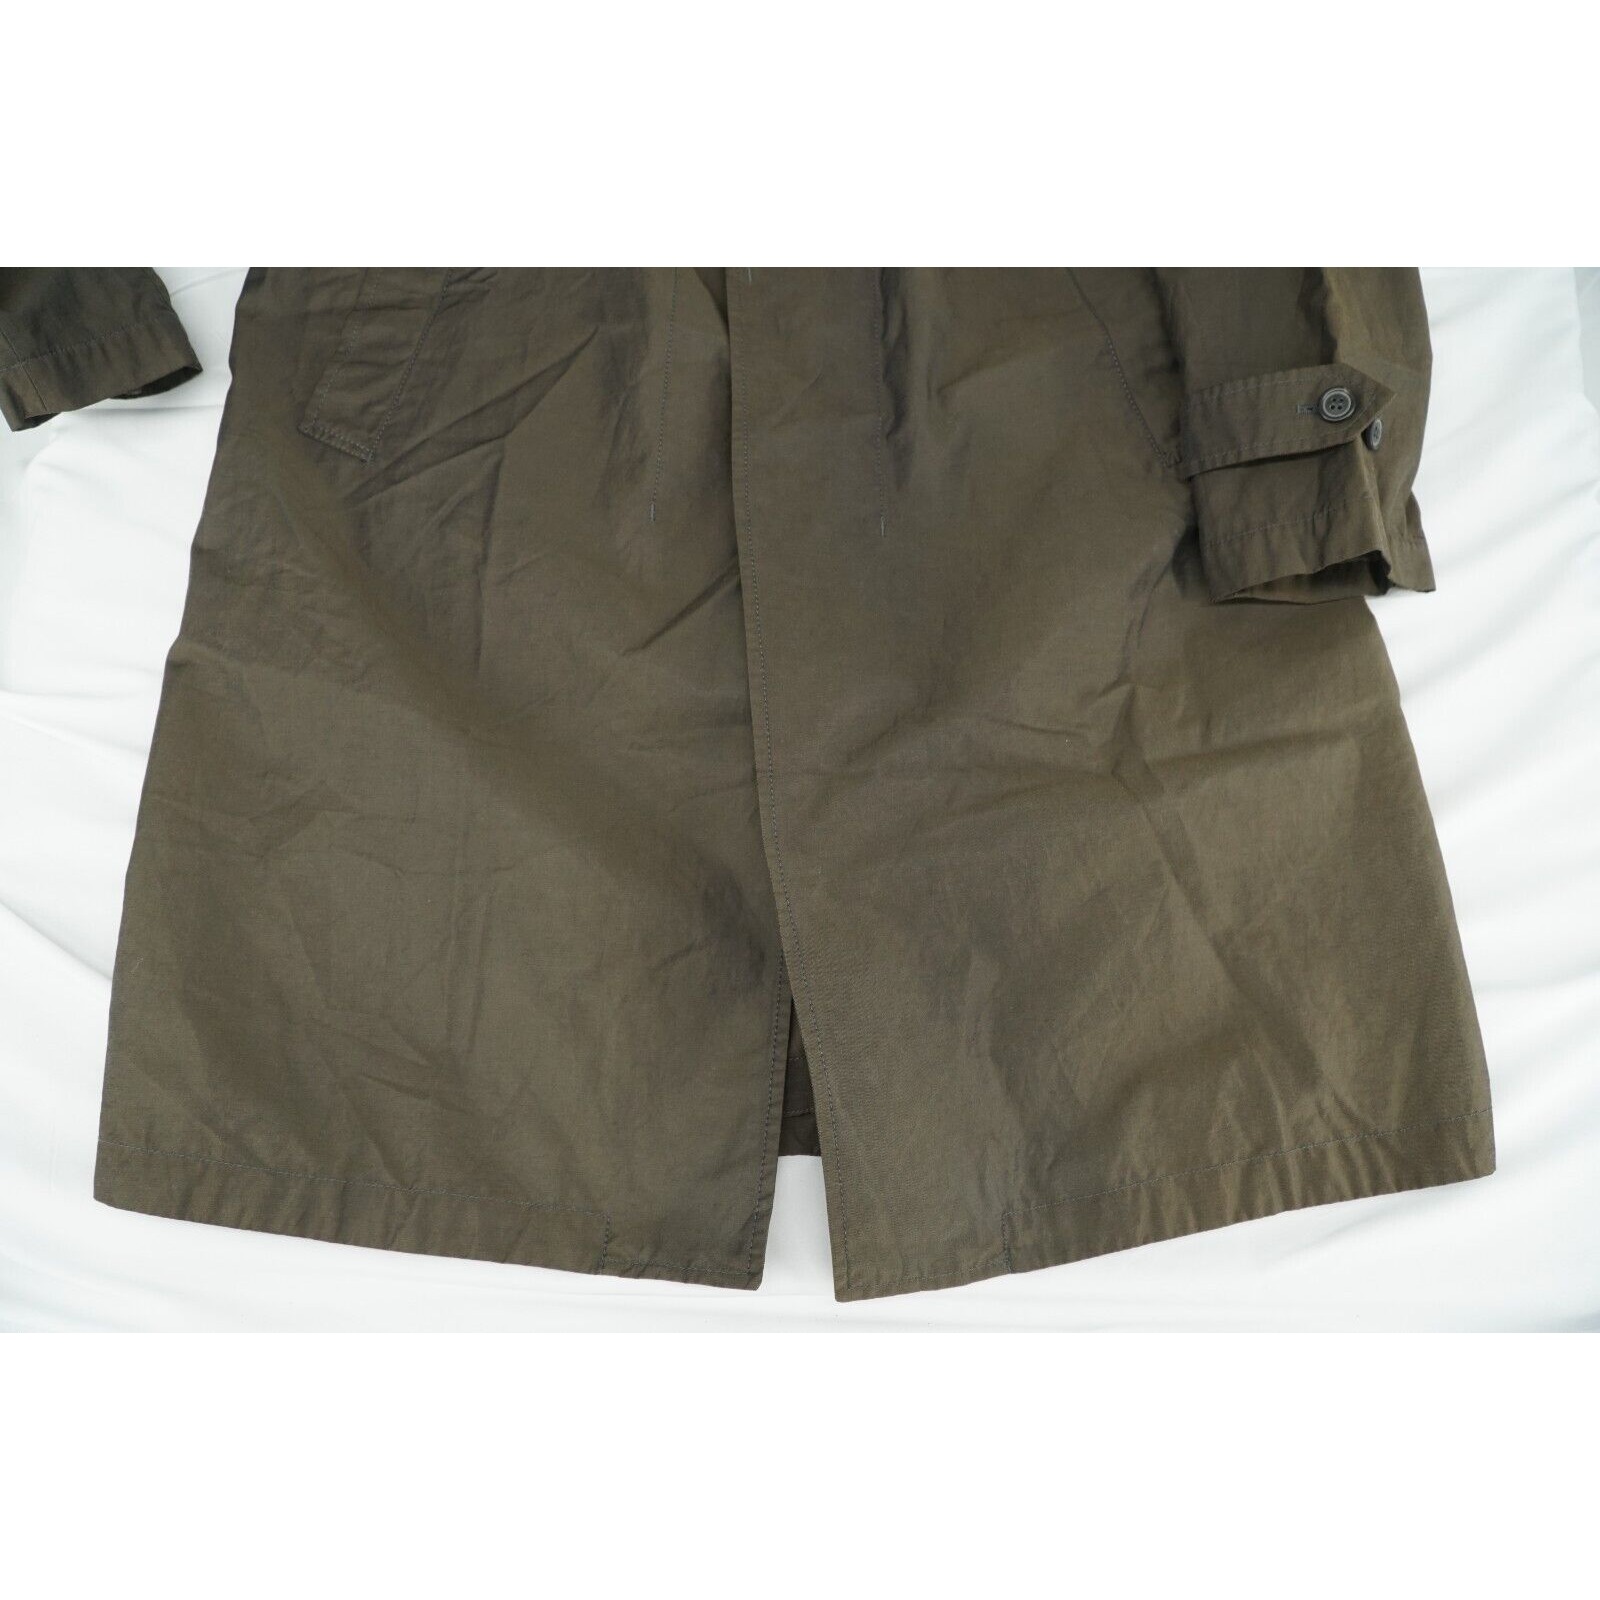 Lanvin Trench Coat Brown Iridescent - Sz 50 - 16